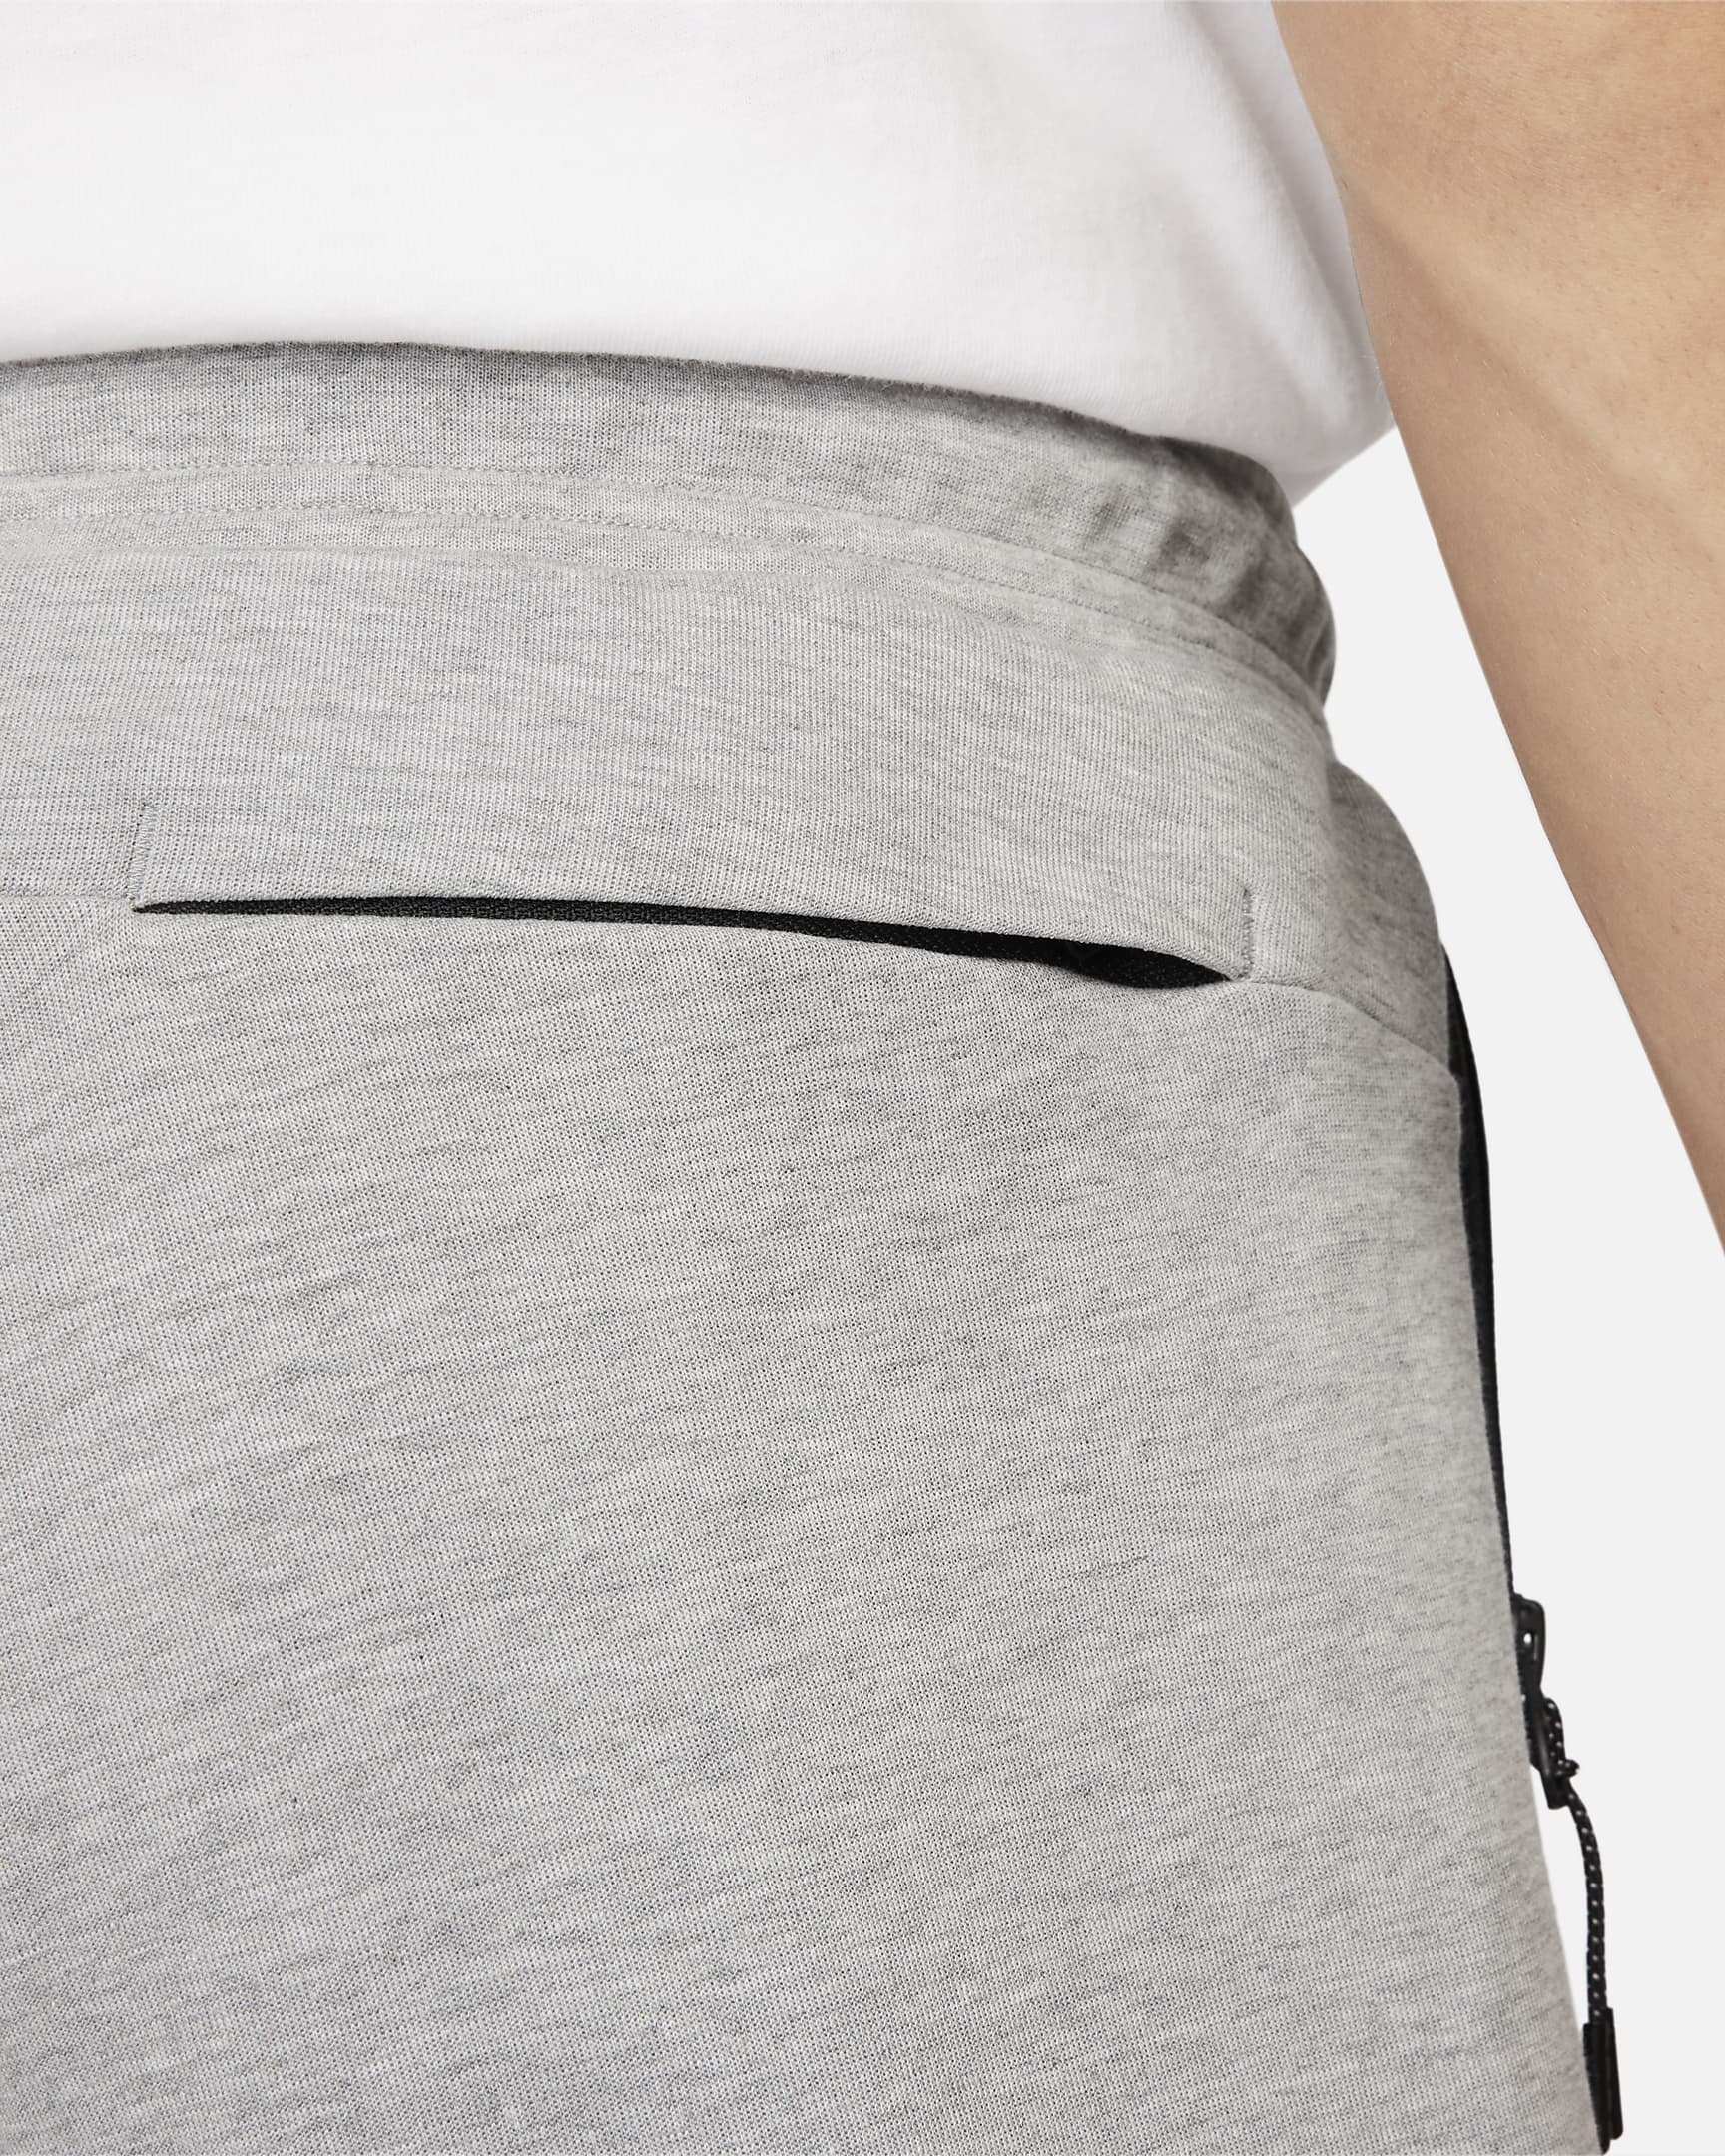 Nike Sportswear Tech Fleece OG Men's Slim-Fit Joggers. Nike ID